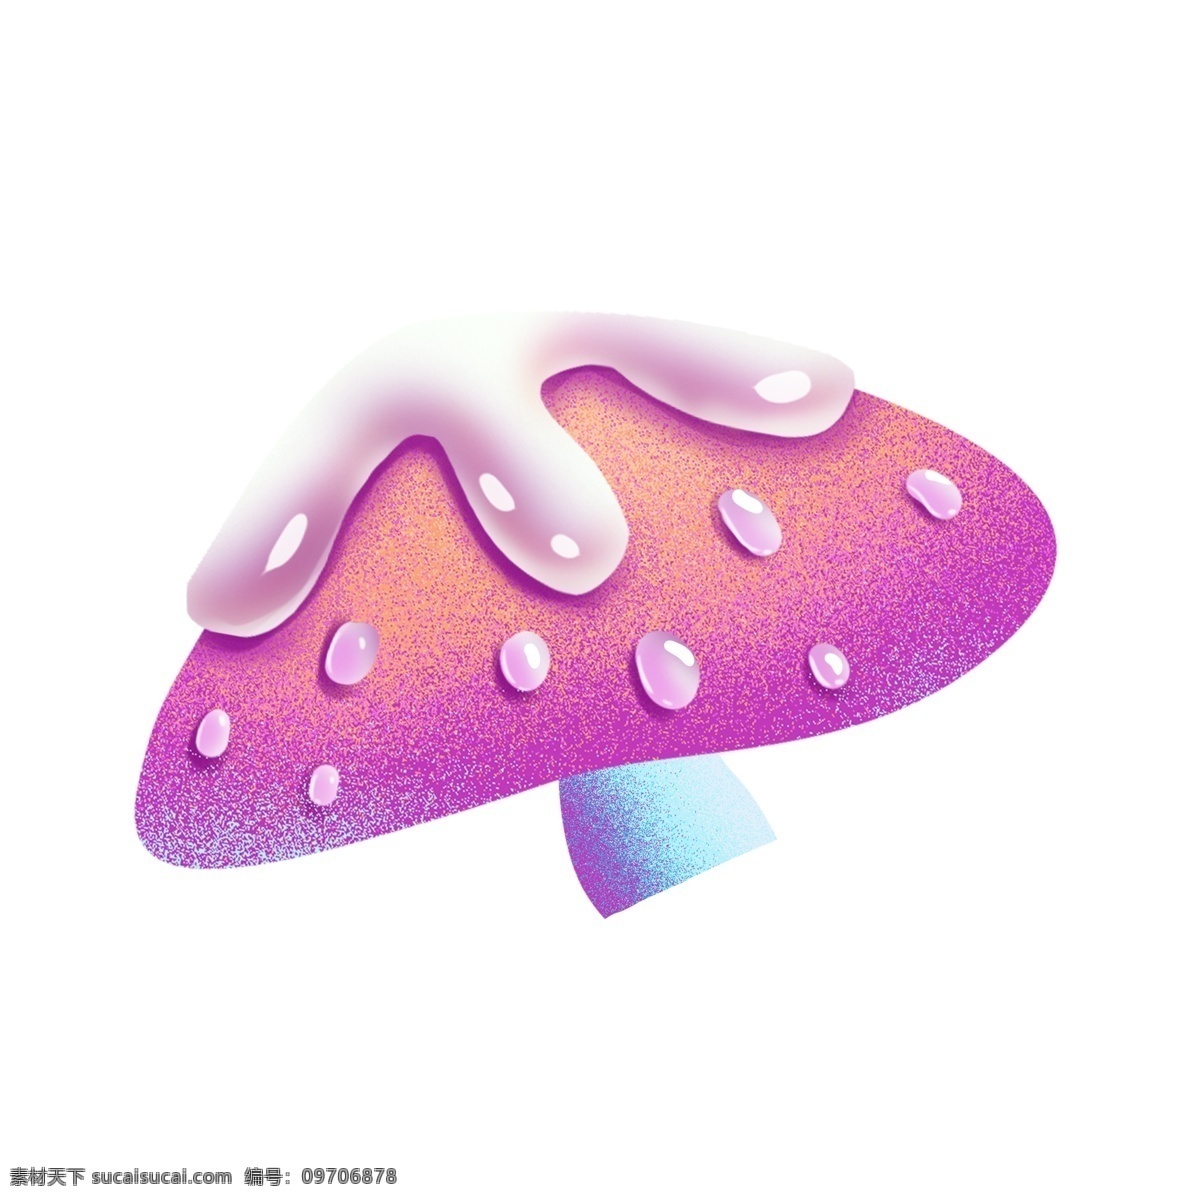 渐变 炫彩 彩色 蘑菇 绘画 插画元素 设计元素 卡通 简约 小清新 精致